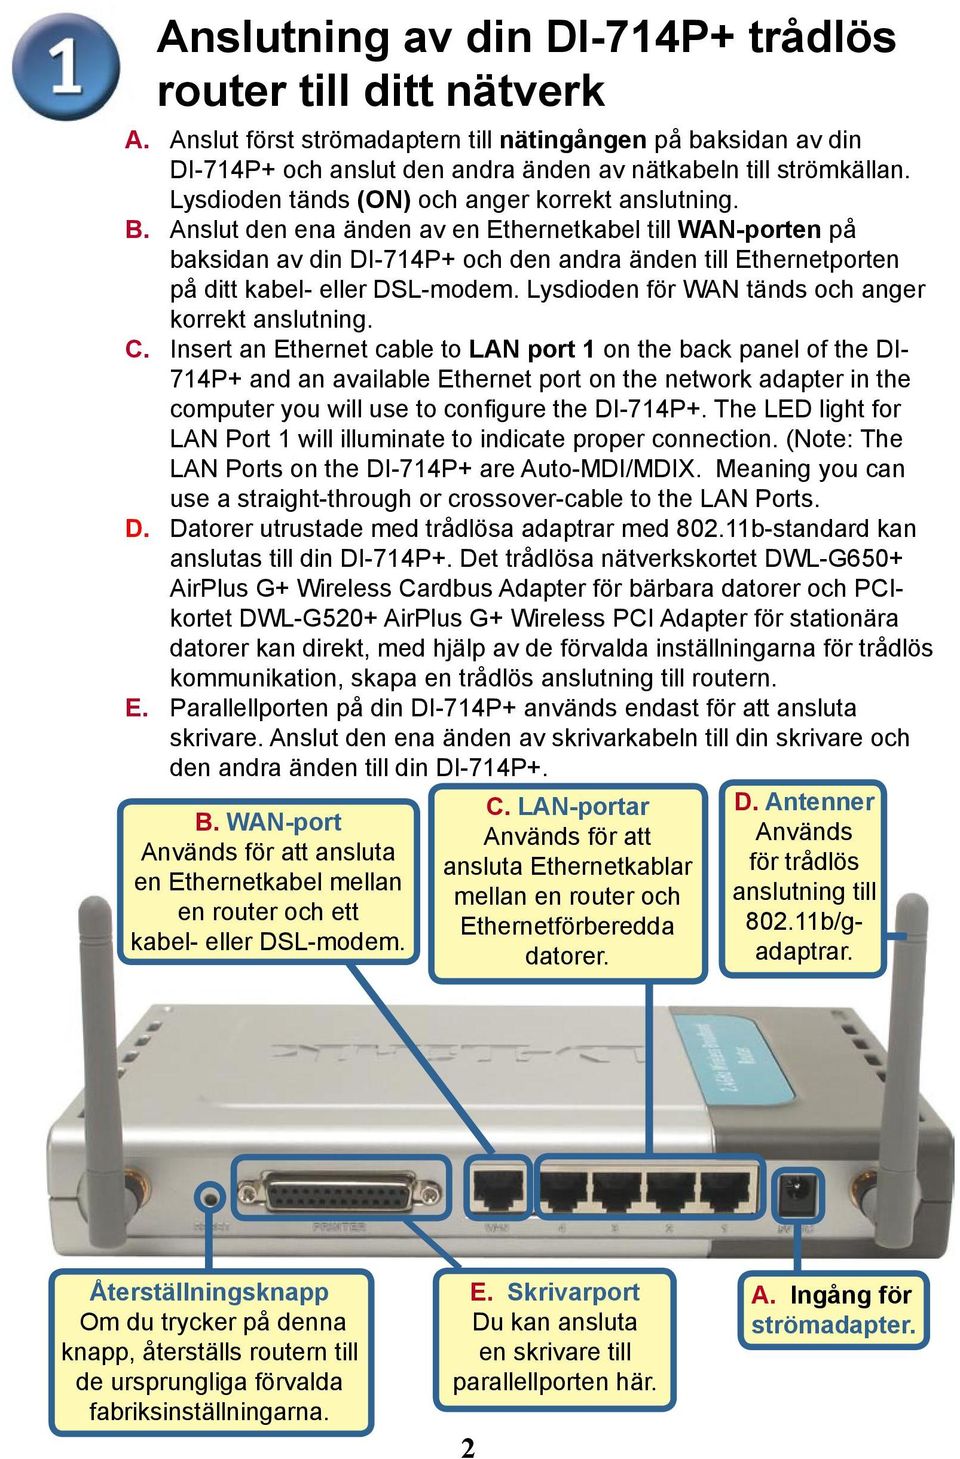 Anslut den ena änden av en Ethernetkabel till WAN-porten på baksidan av din DI-714P+ och den andra änden till Ethernetporten på ditt kabel- eller DSL-modem.